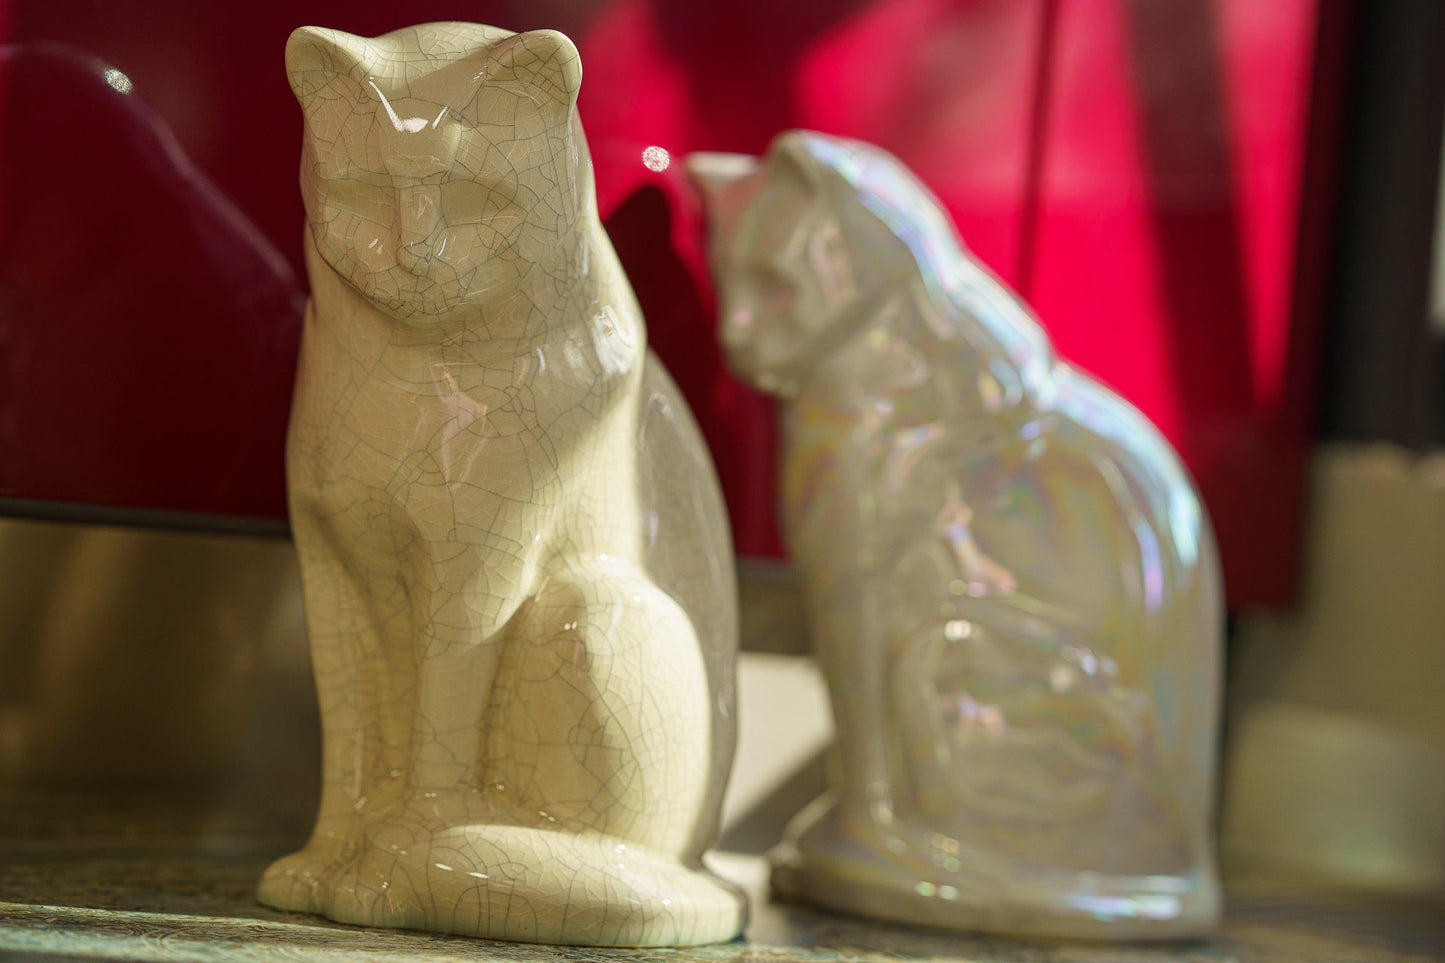 
                  
                    Pulvis Art Urns Pet Urn Neko Pet Urn for Ashes - White | Ceramic | Handmade
                  
                